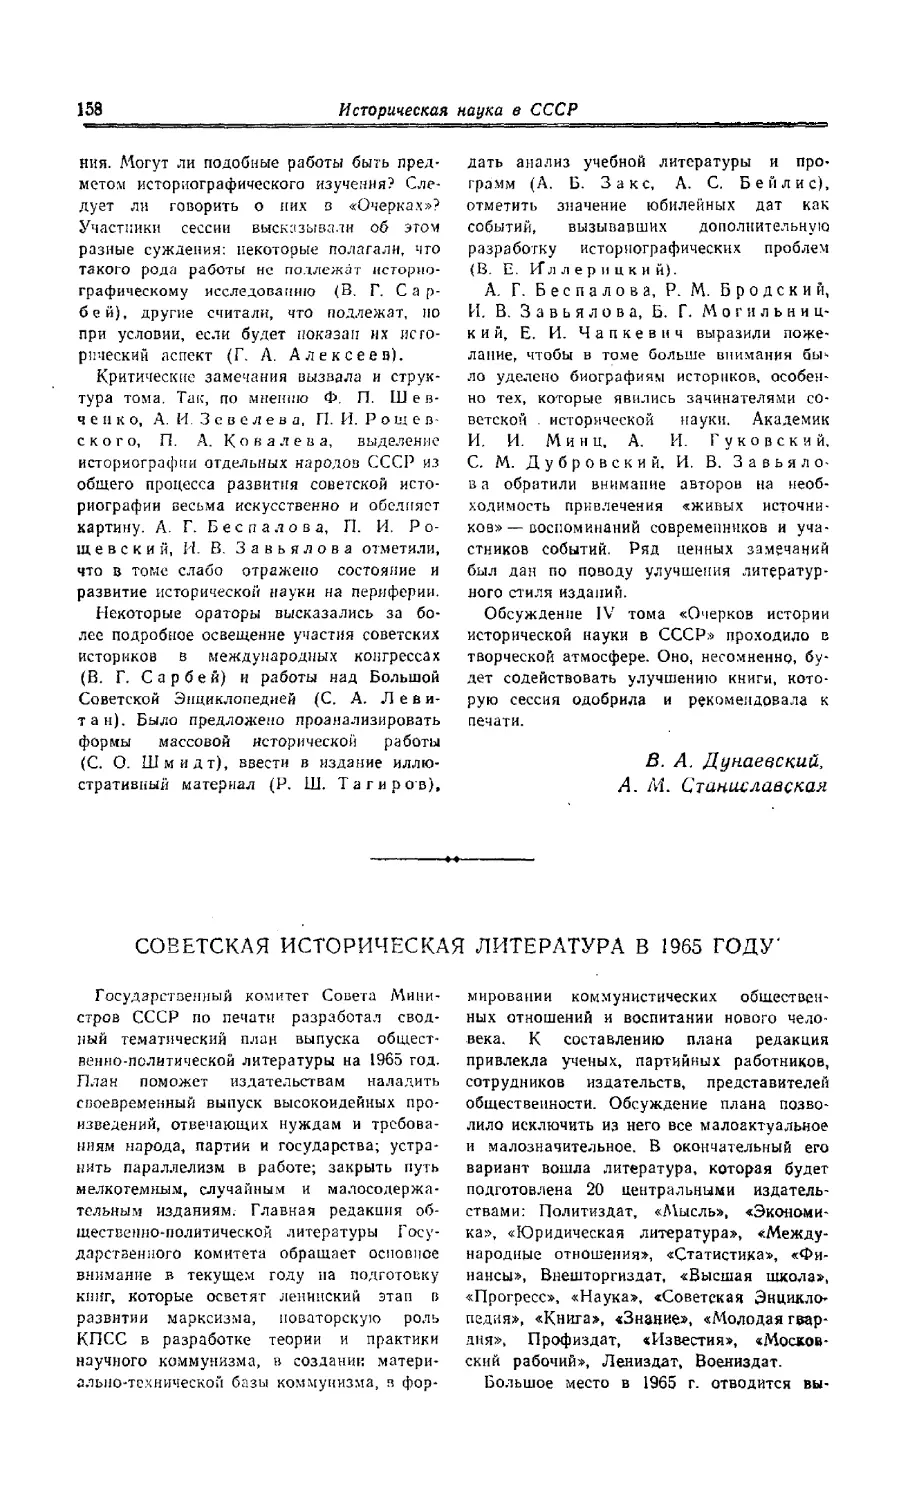 Г. М. Алексеев - Советская историческая литература в 1965 году